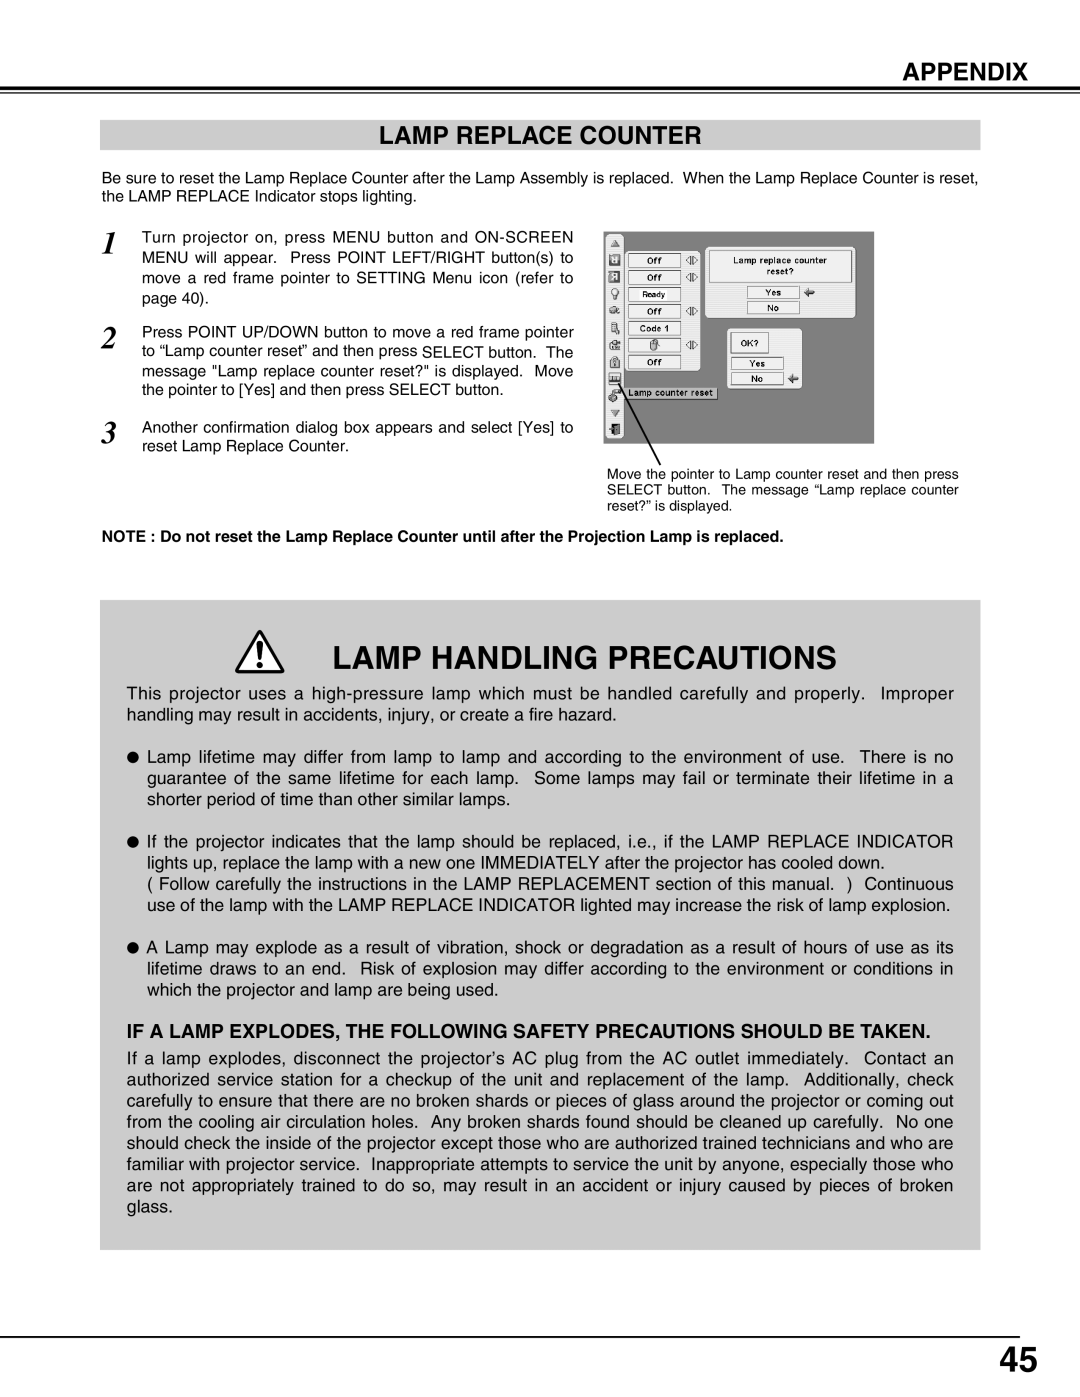 Sanyo PLC-XP55L owner manual Lamp Handling Precautions, Appendix Lamp Replace Counter 